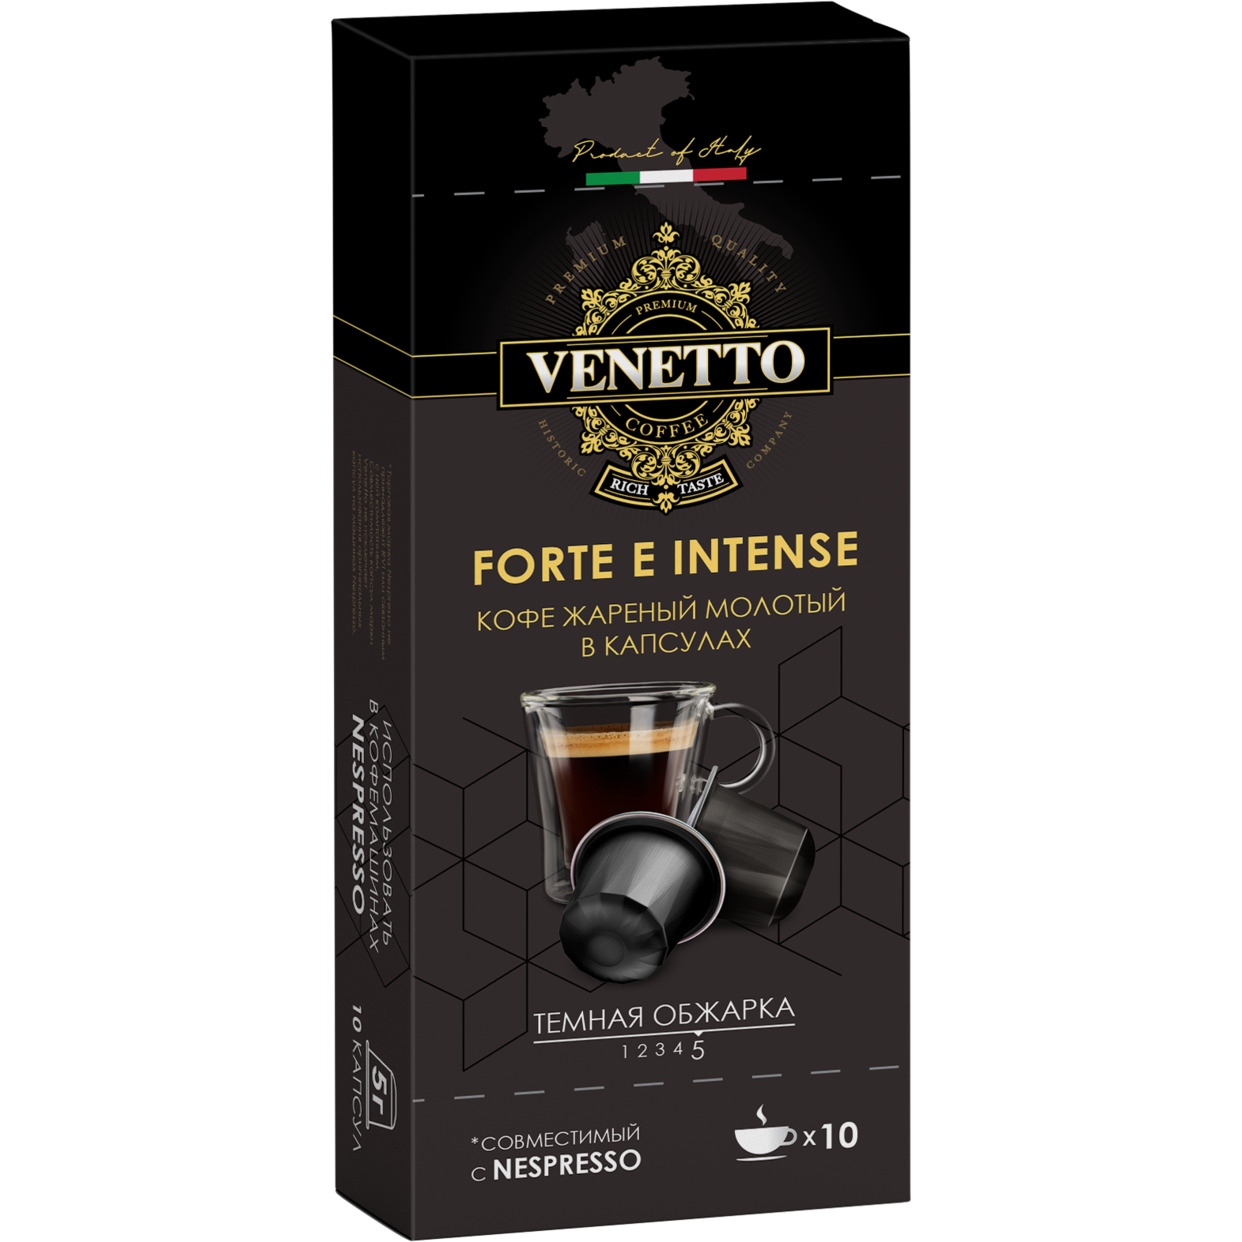 Кофе жареный молотый в капсулах FORTE E INTENSE ТМ Venetto 50 г по акции в Пятерочке